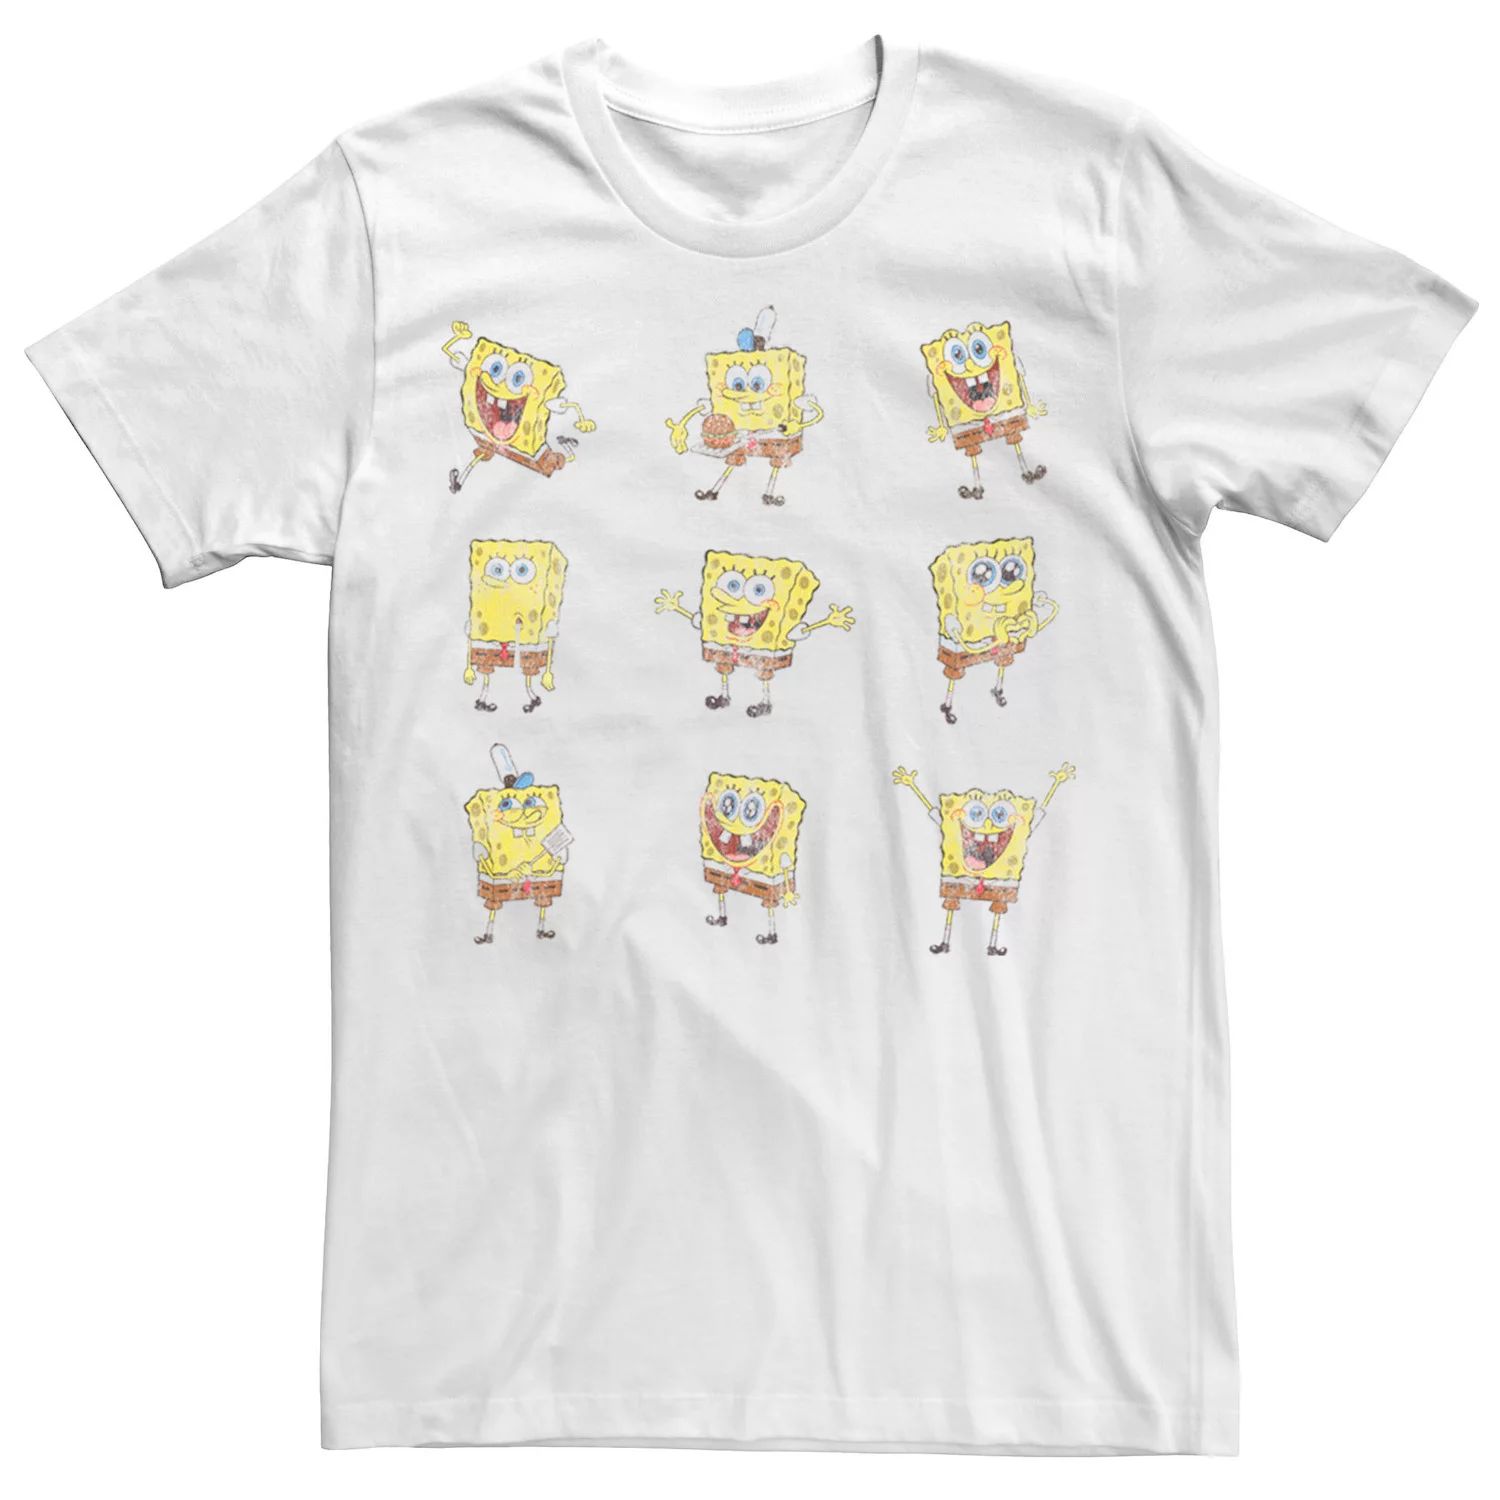 Мужская футболка Happy Poses Sponge Bob SquarePants Nickelodeon цена и фото